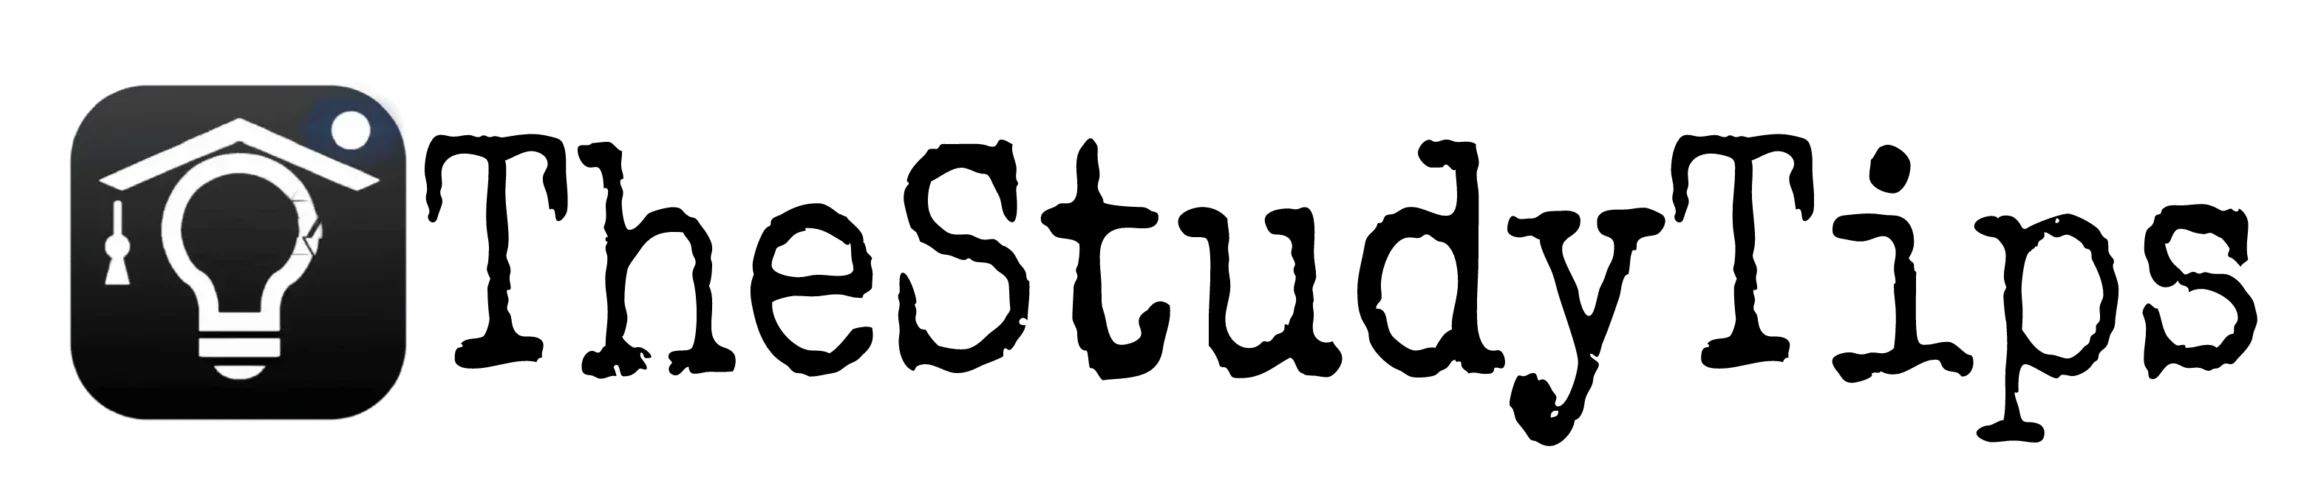 Thestudytips logo